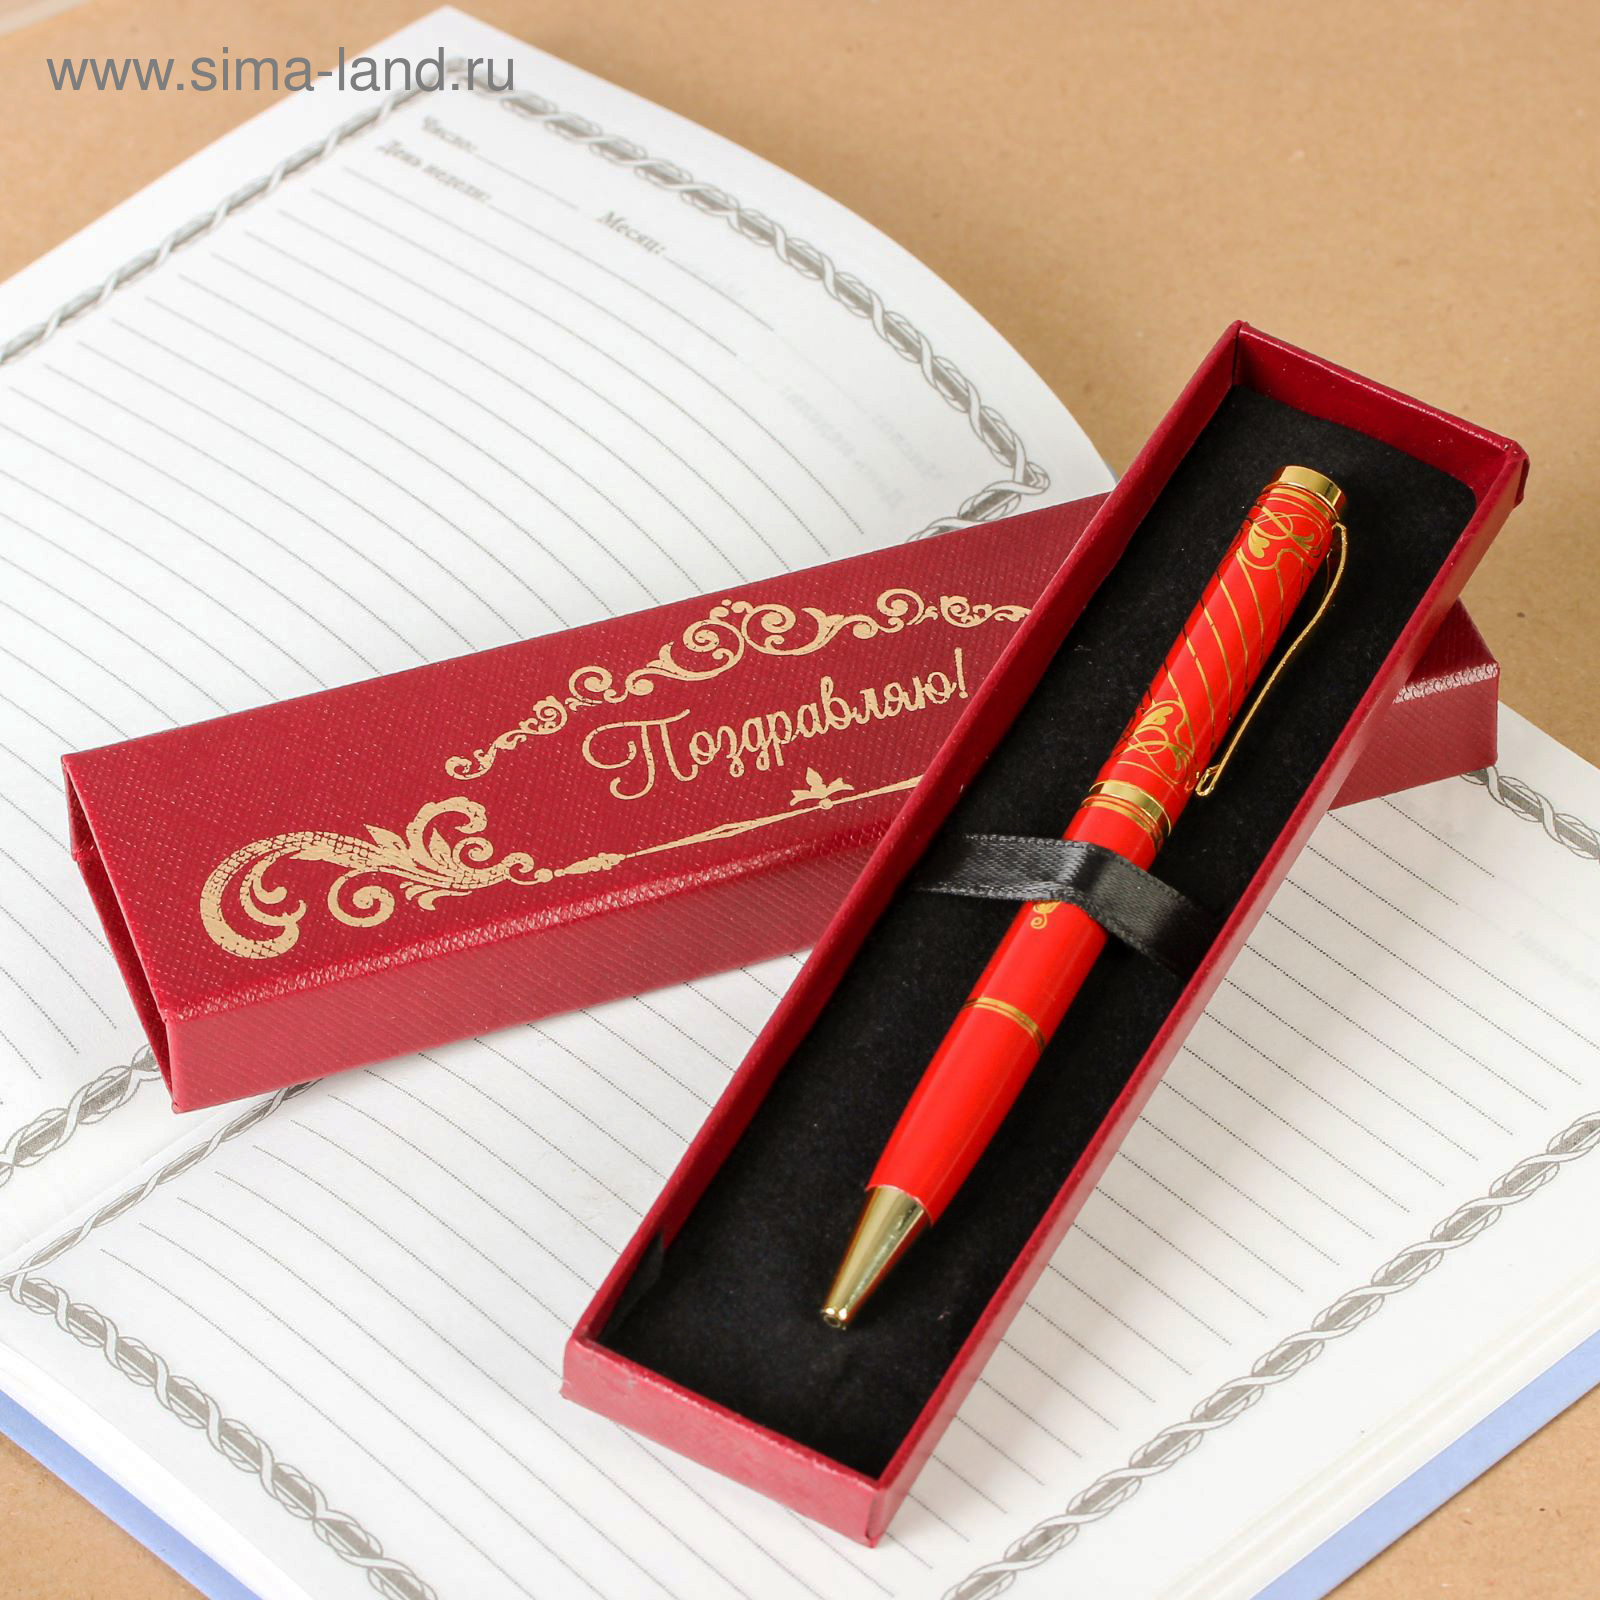 Подарочная ручка для мужчин. Ручка подарочная. Ручки в подарок. Сувенирные ручки. Красивые ручки на подарок.